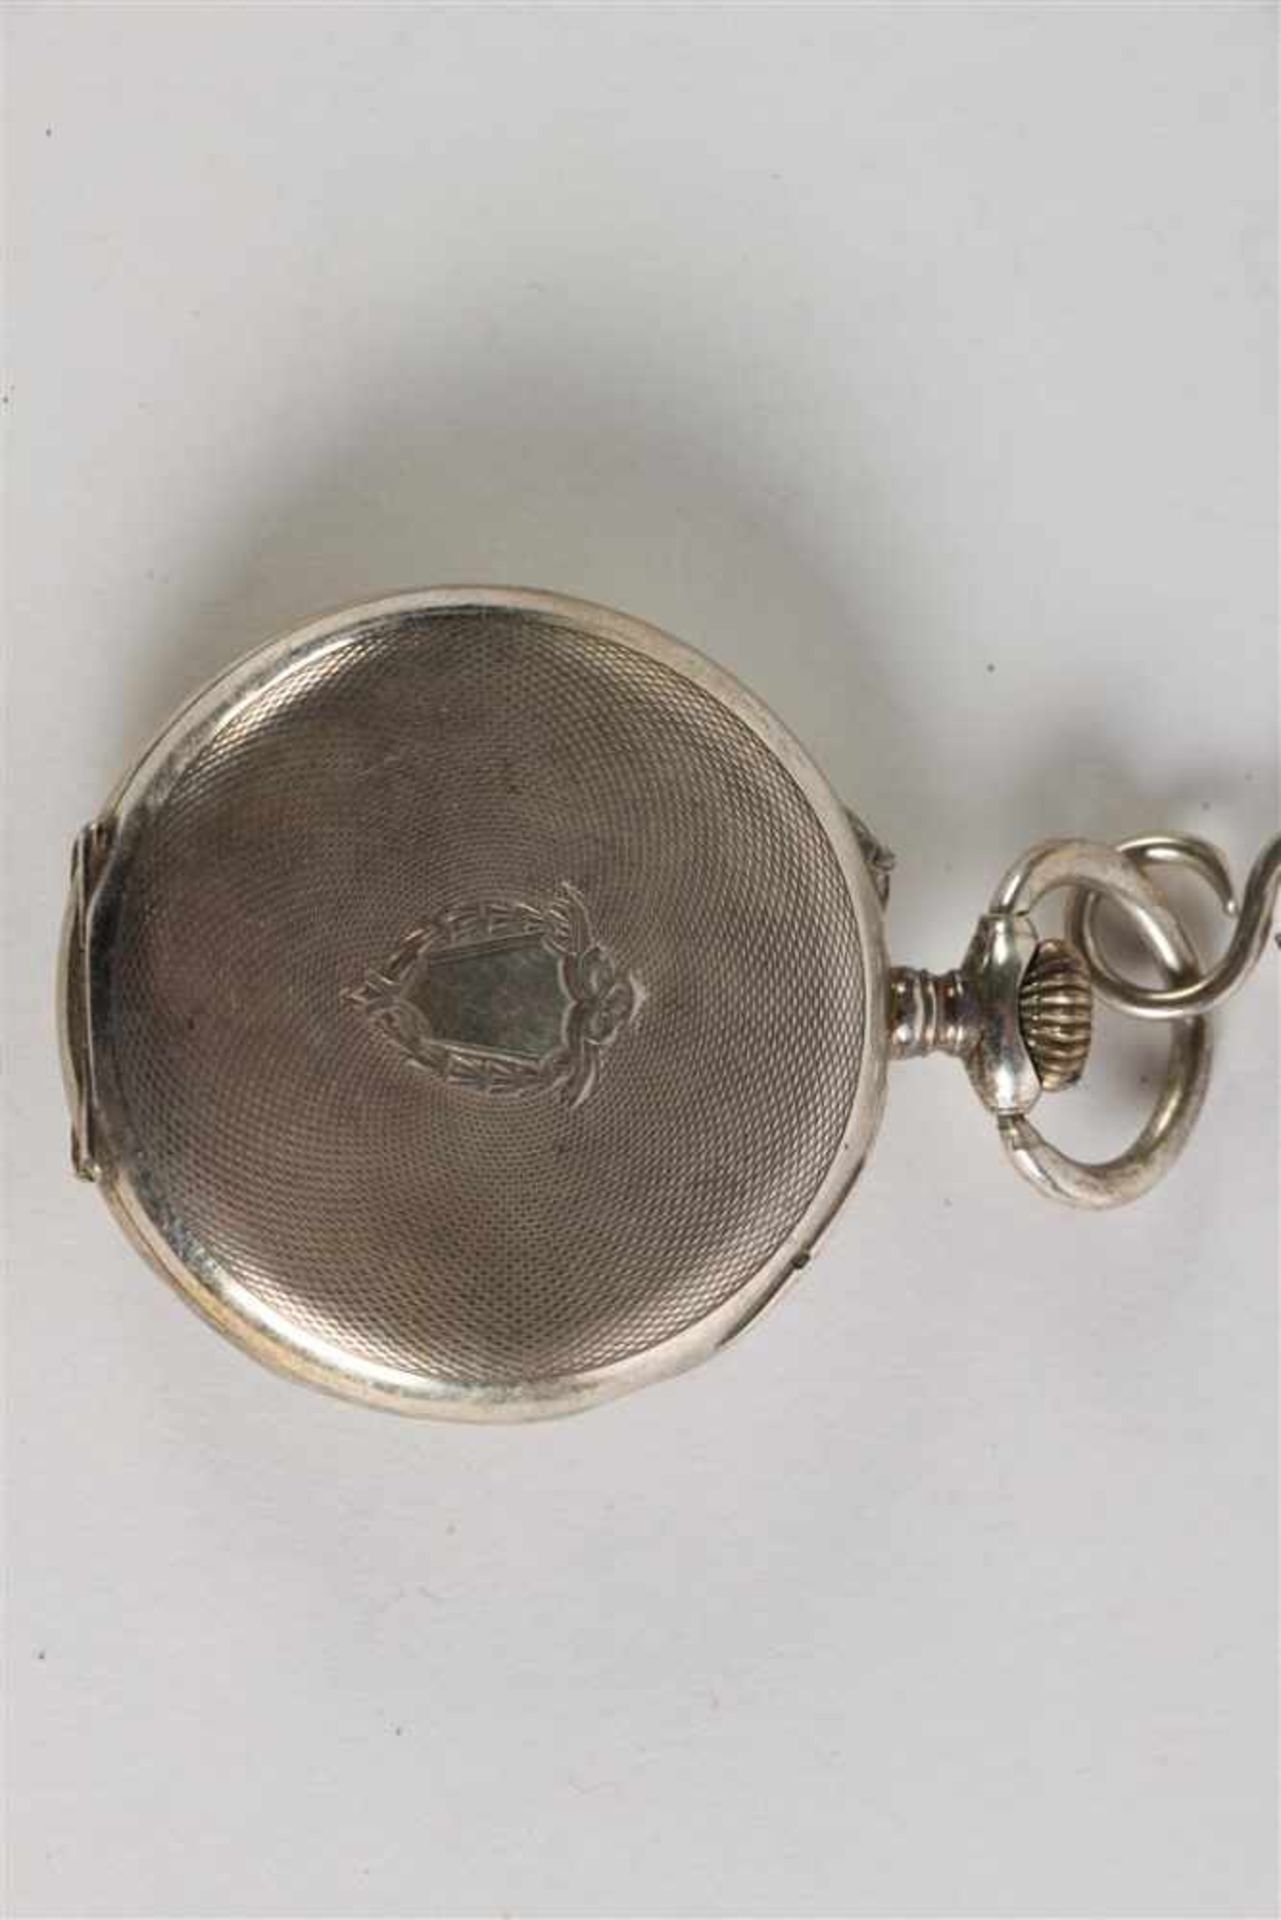 Zeeuwse chatelaine met horloge en sleutel gedecoreerd met paard en koe. L: 34 cm. - Image 3 of 4